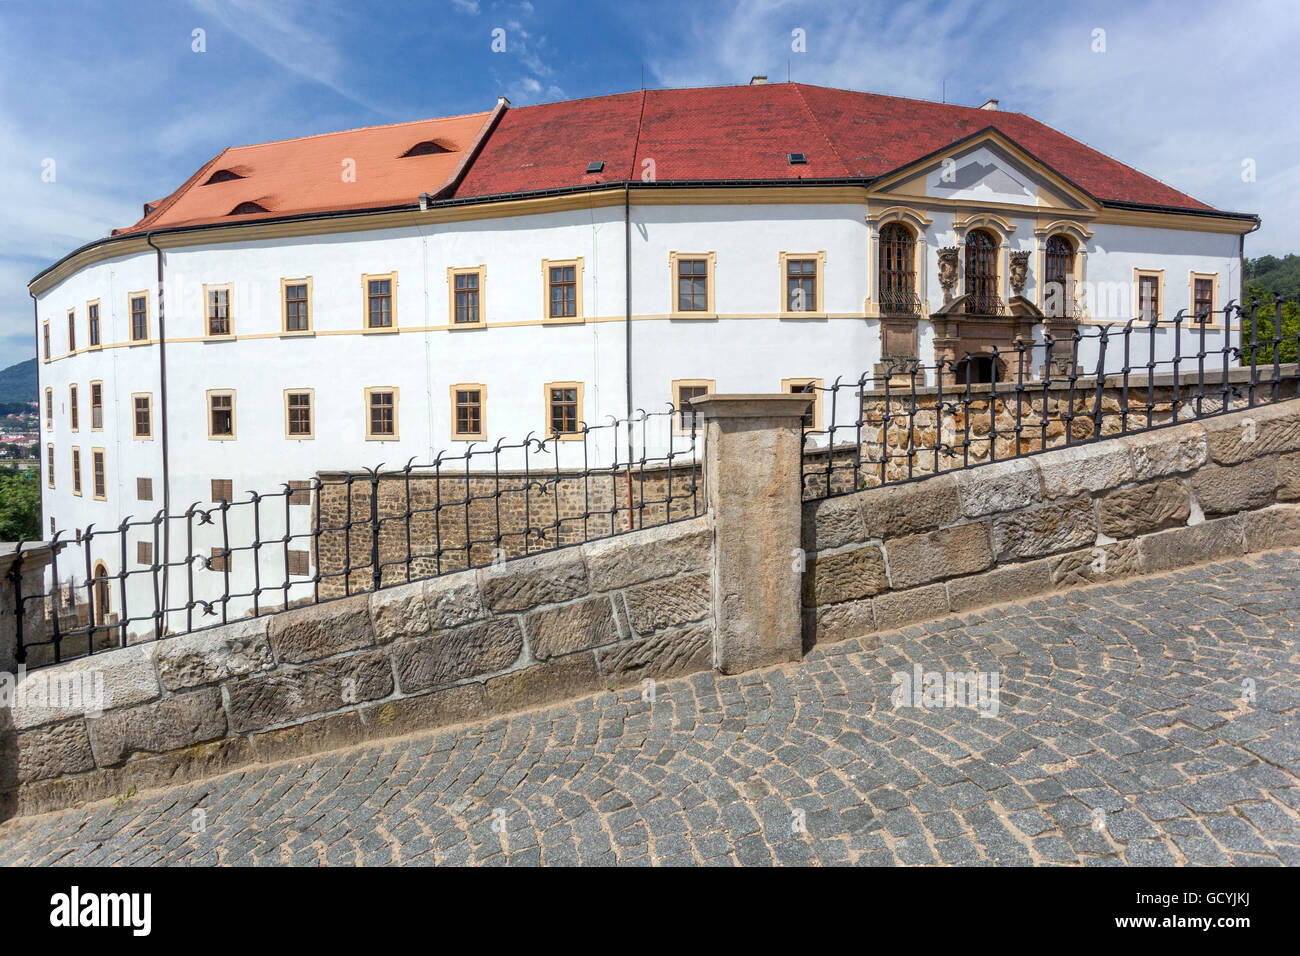 Decin baroque castle coming to the gate, North Bohemia, Decin Czech Republic Stock Photo